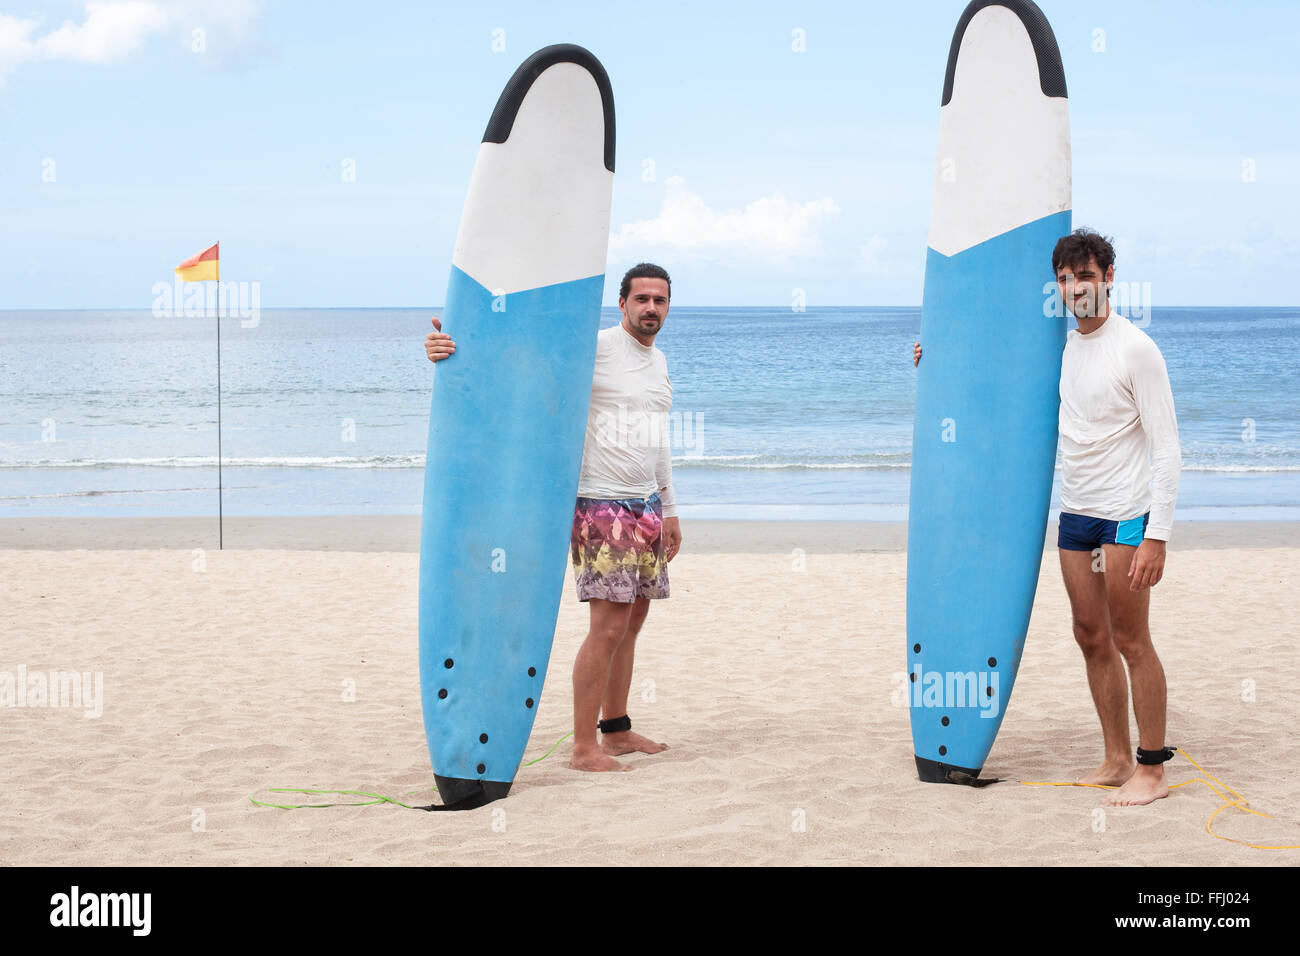 Dos surfistas comunicando en la playa. Imágenes de stock. Foto de stock